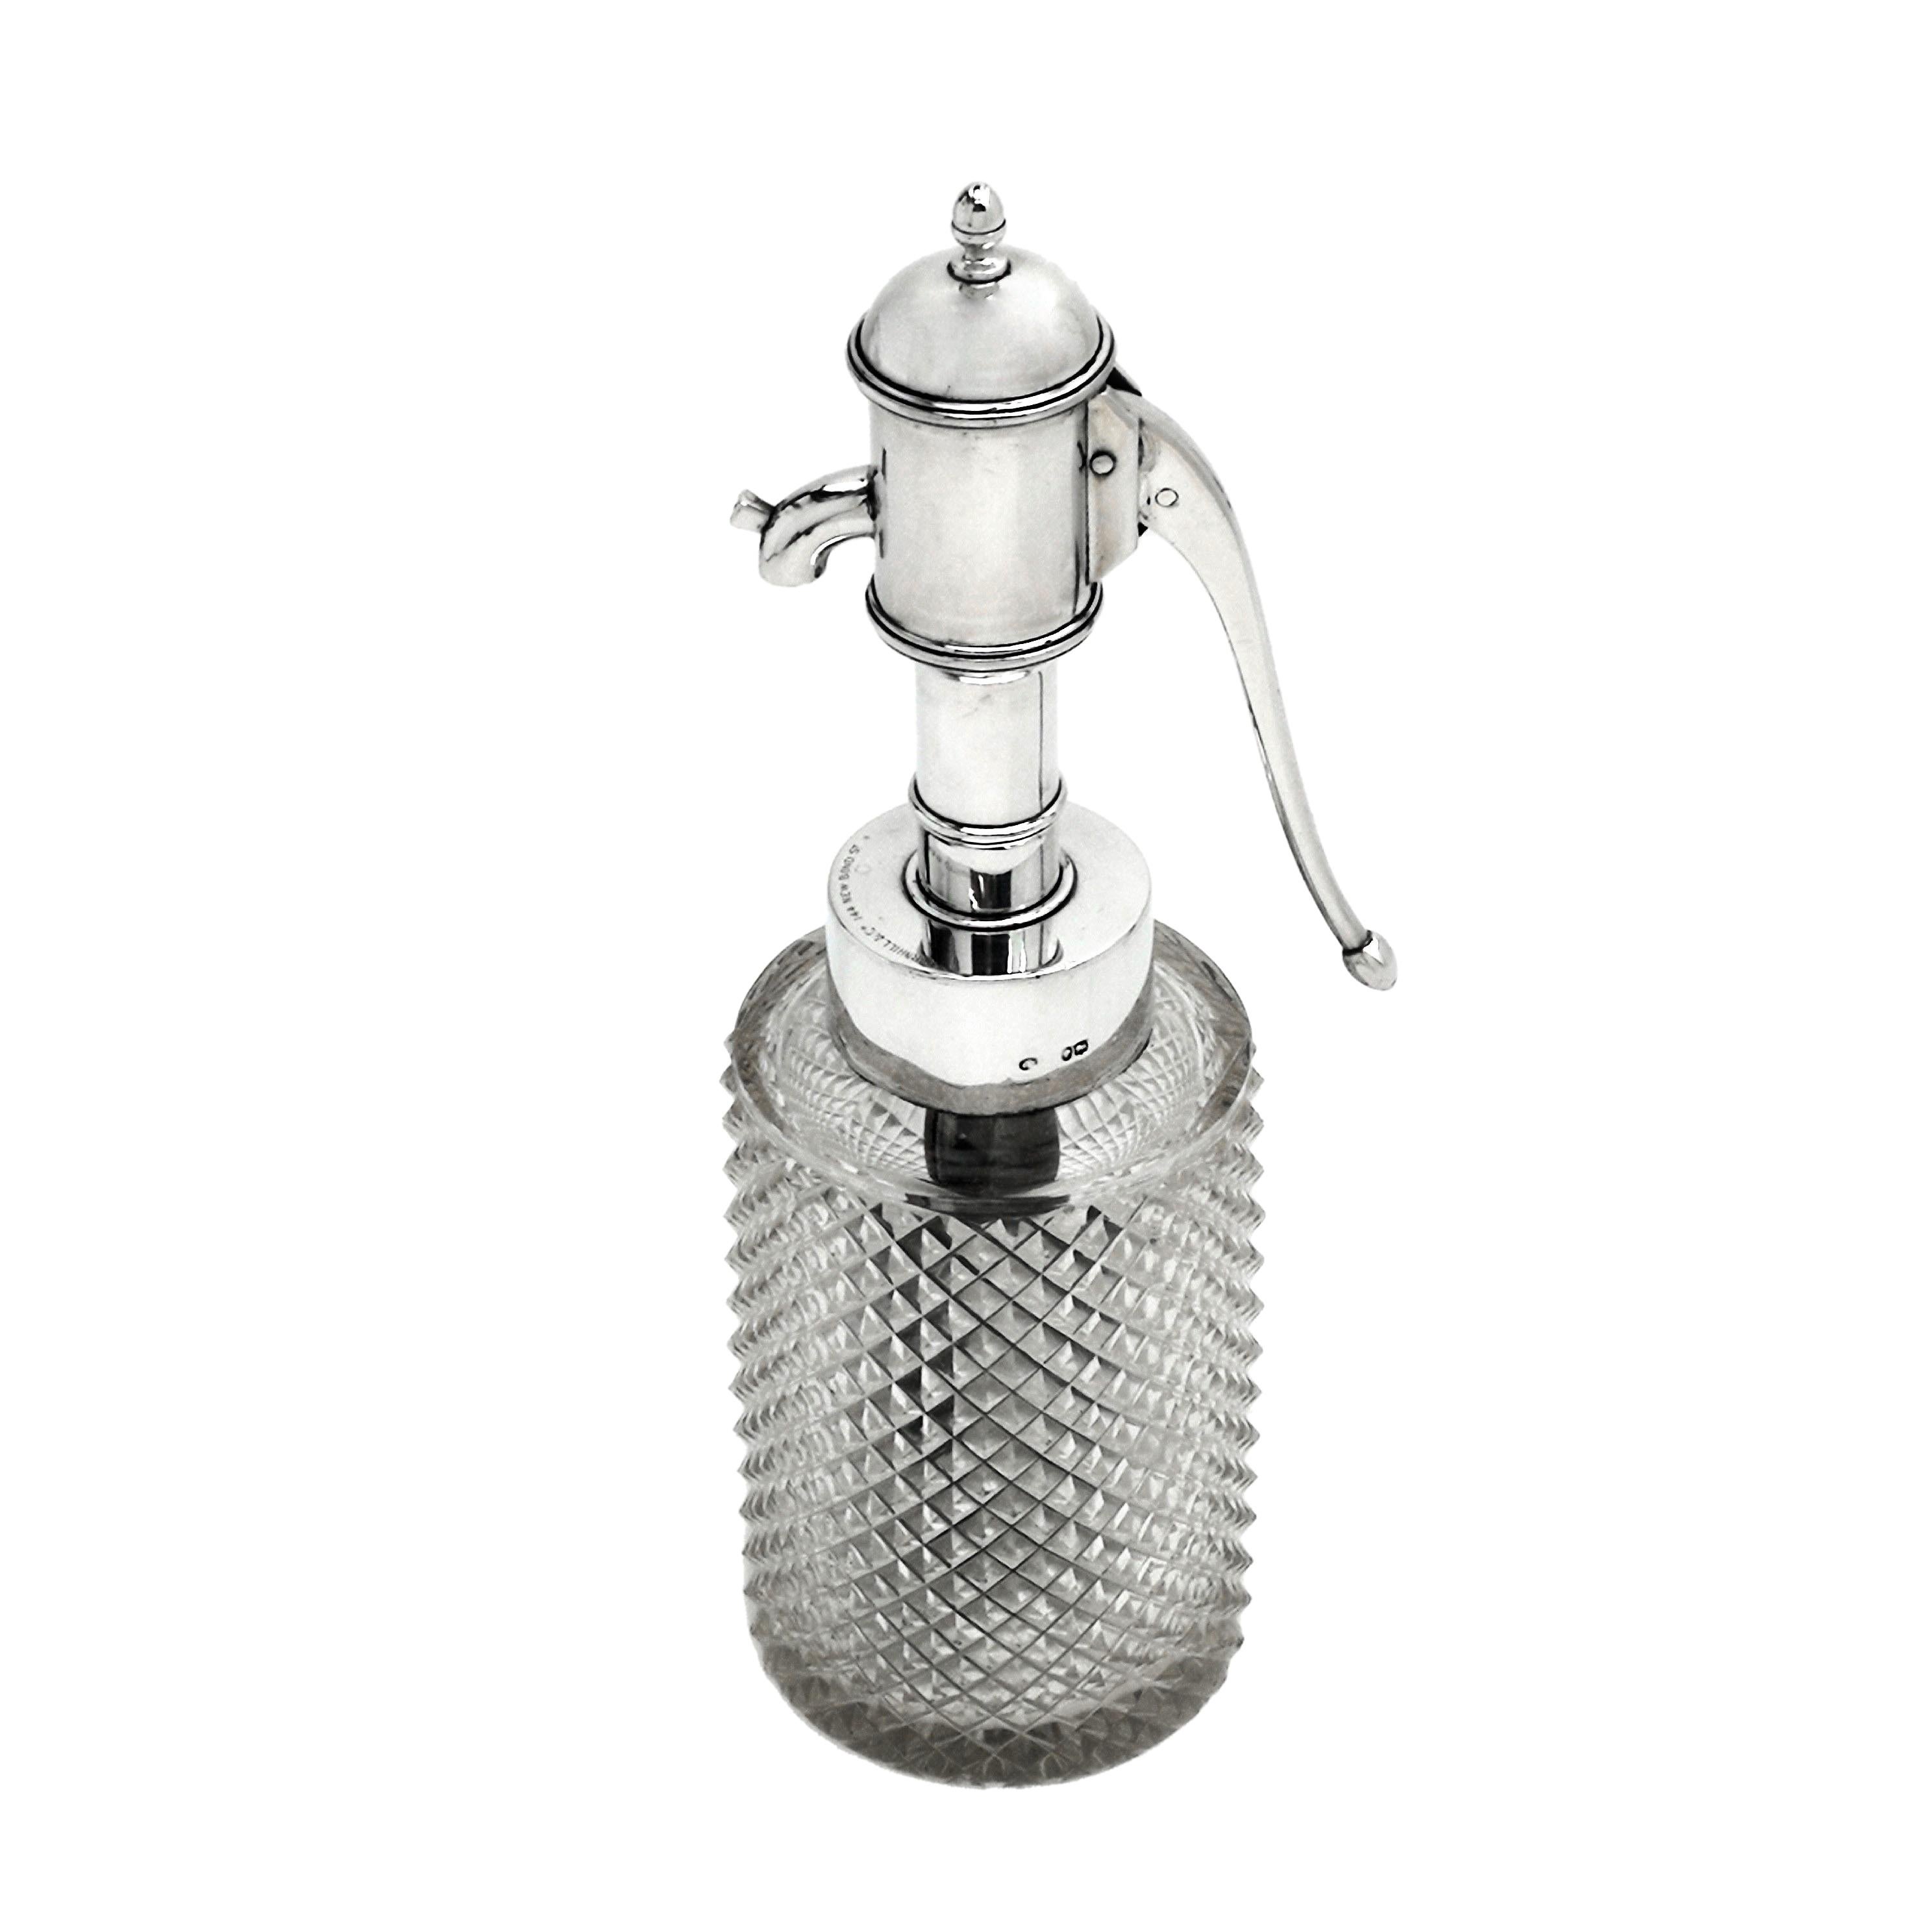 Eine neue antike viktorianische Silber montiert Duft Flasche / Parfümierer mit einem geschliffenen Glaskörper. Diese ungewöhnliche Duftflasche hat die skurrile Form einer Wasserpumpe mit einem hohen silbernen Hals und einem silbernen Pumpengriff.
 
